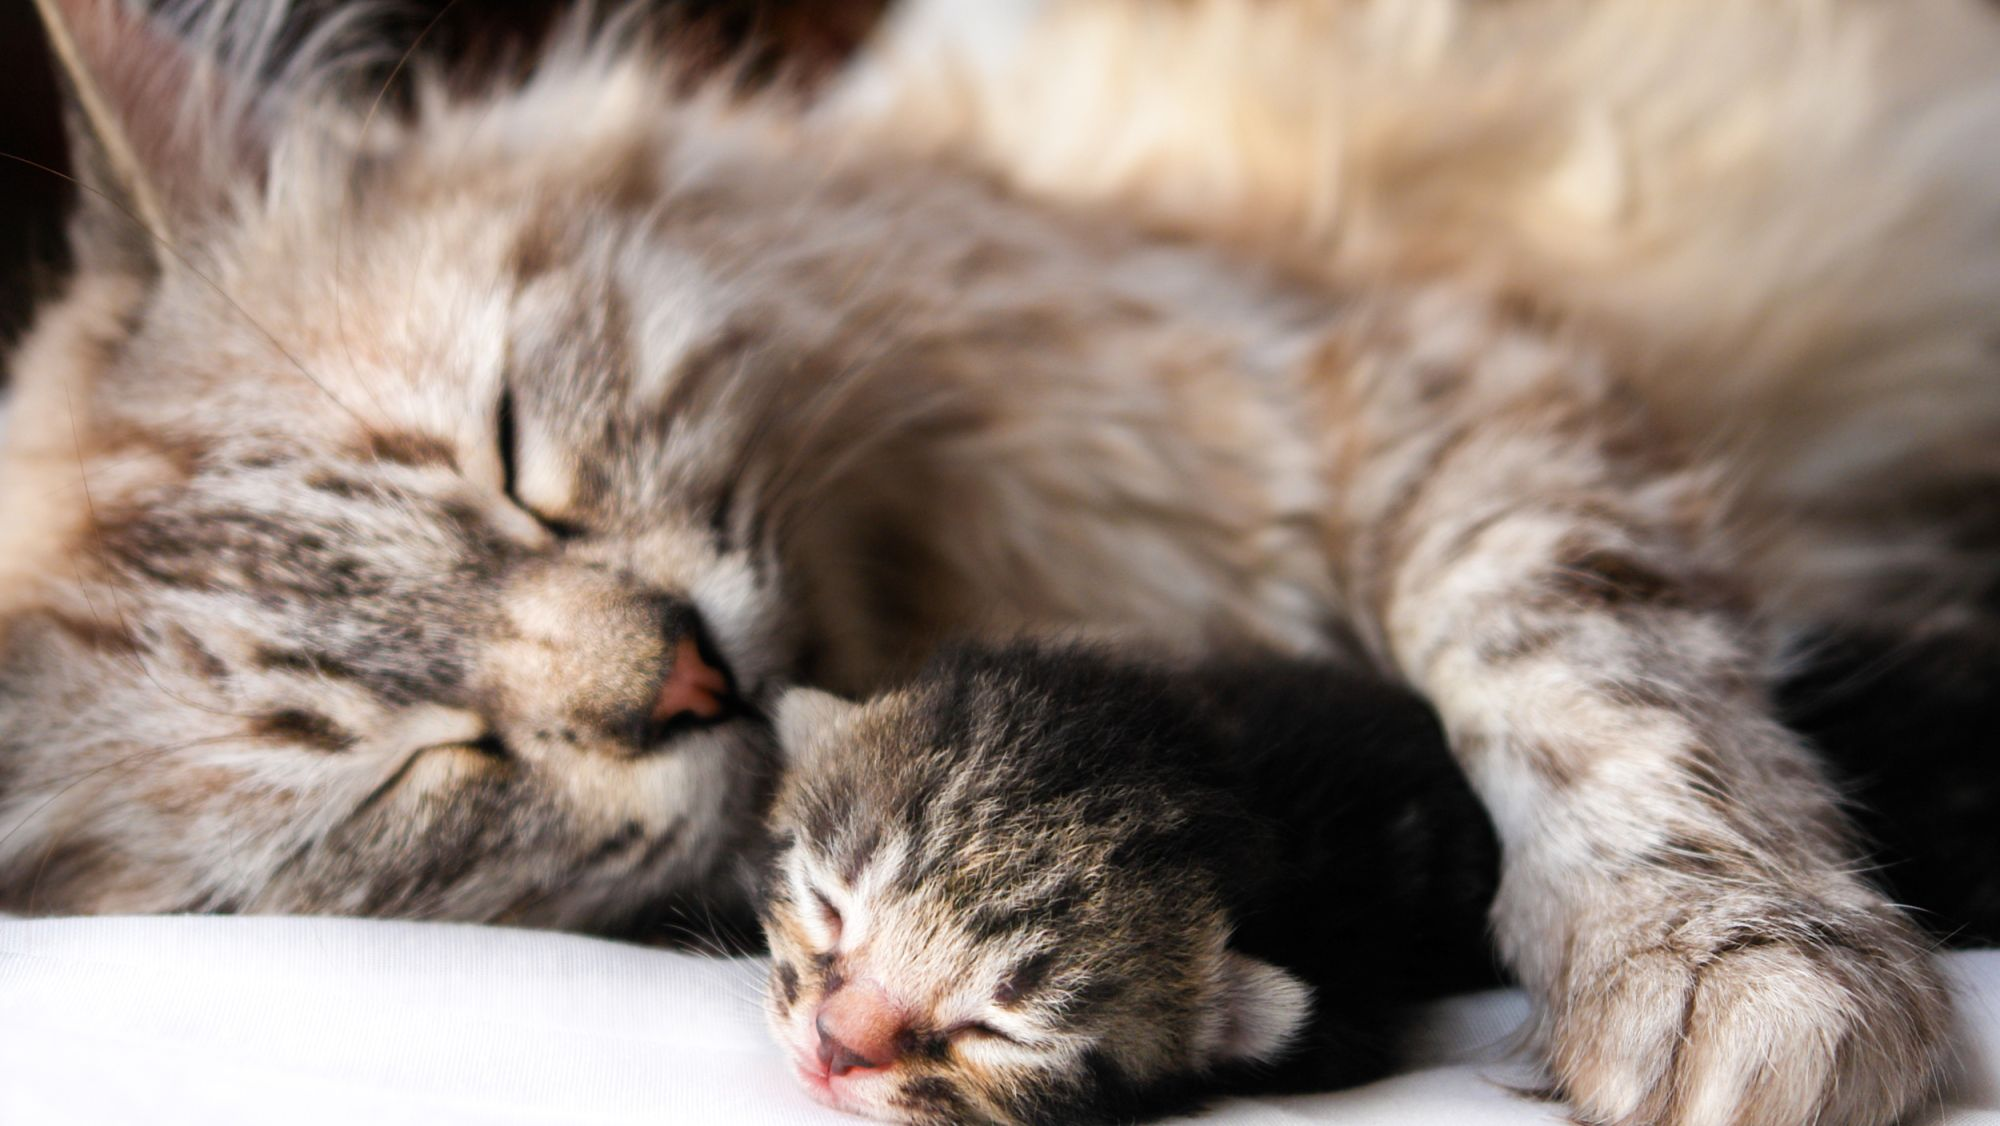 A cat and a kitten sleeping